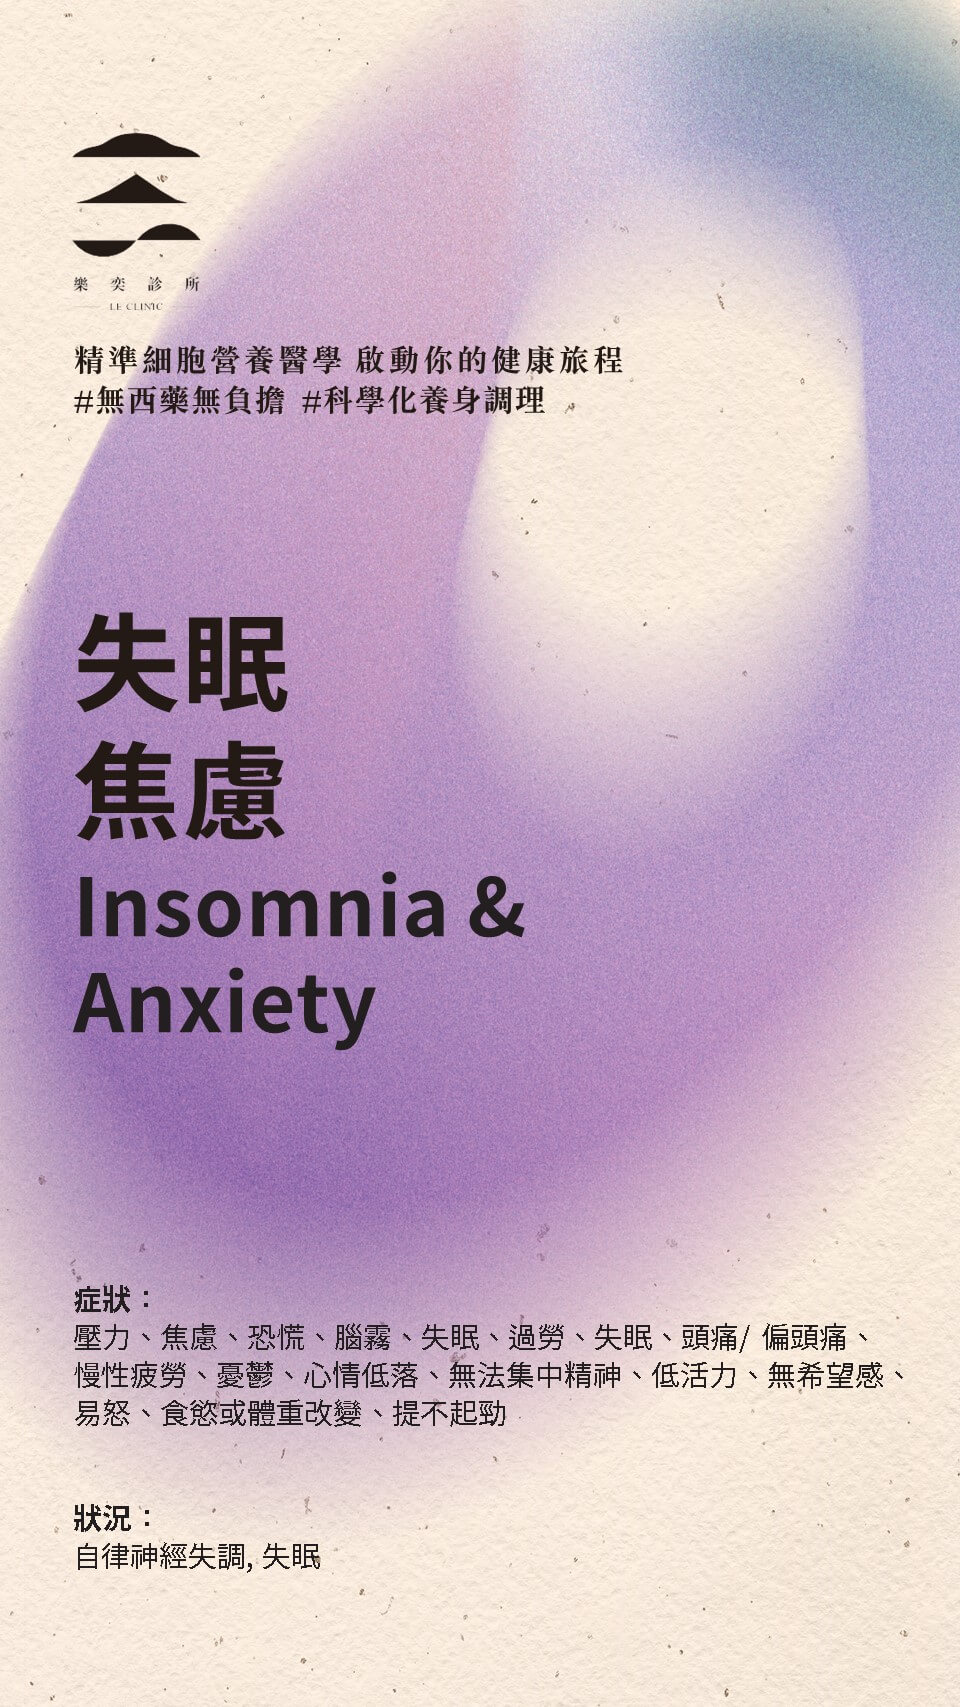 失眠焦慮 Insomnia & Anxiety - 主題